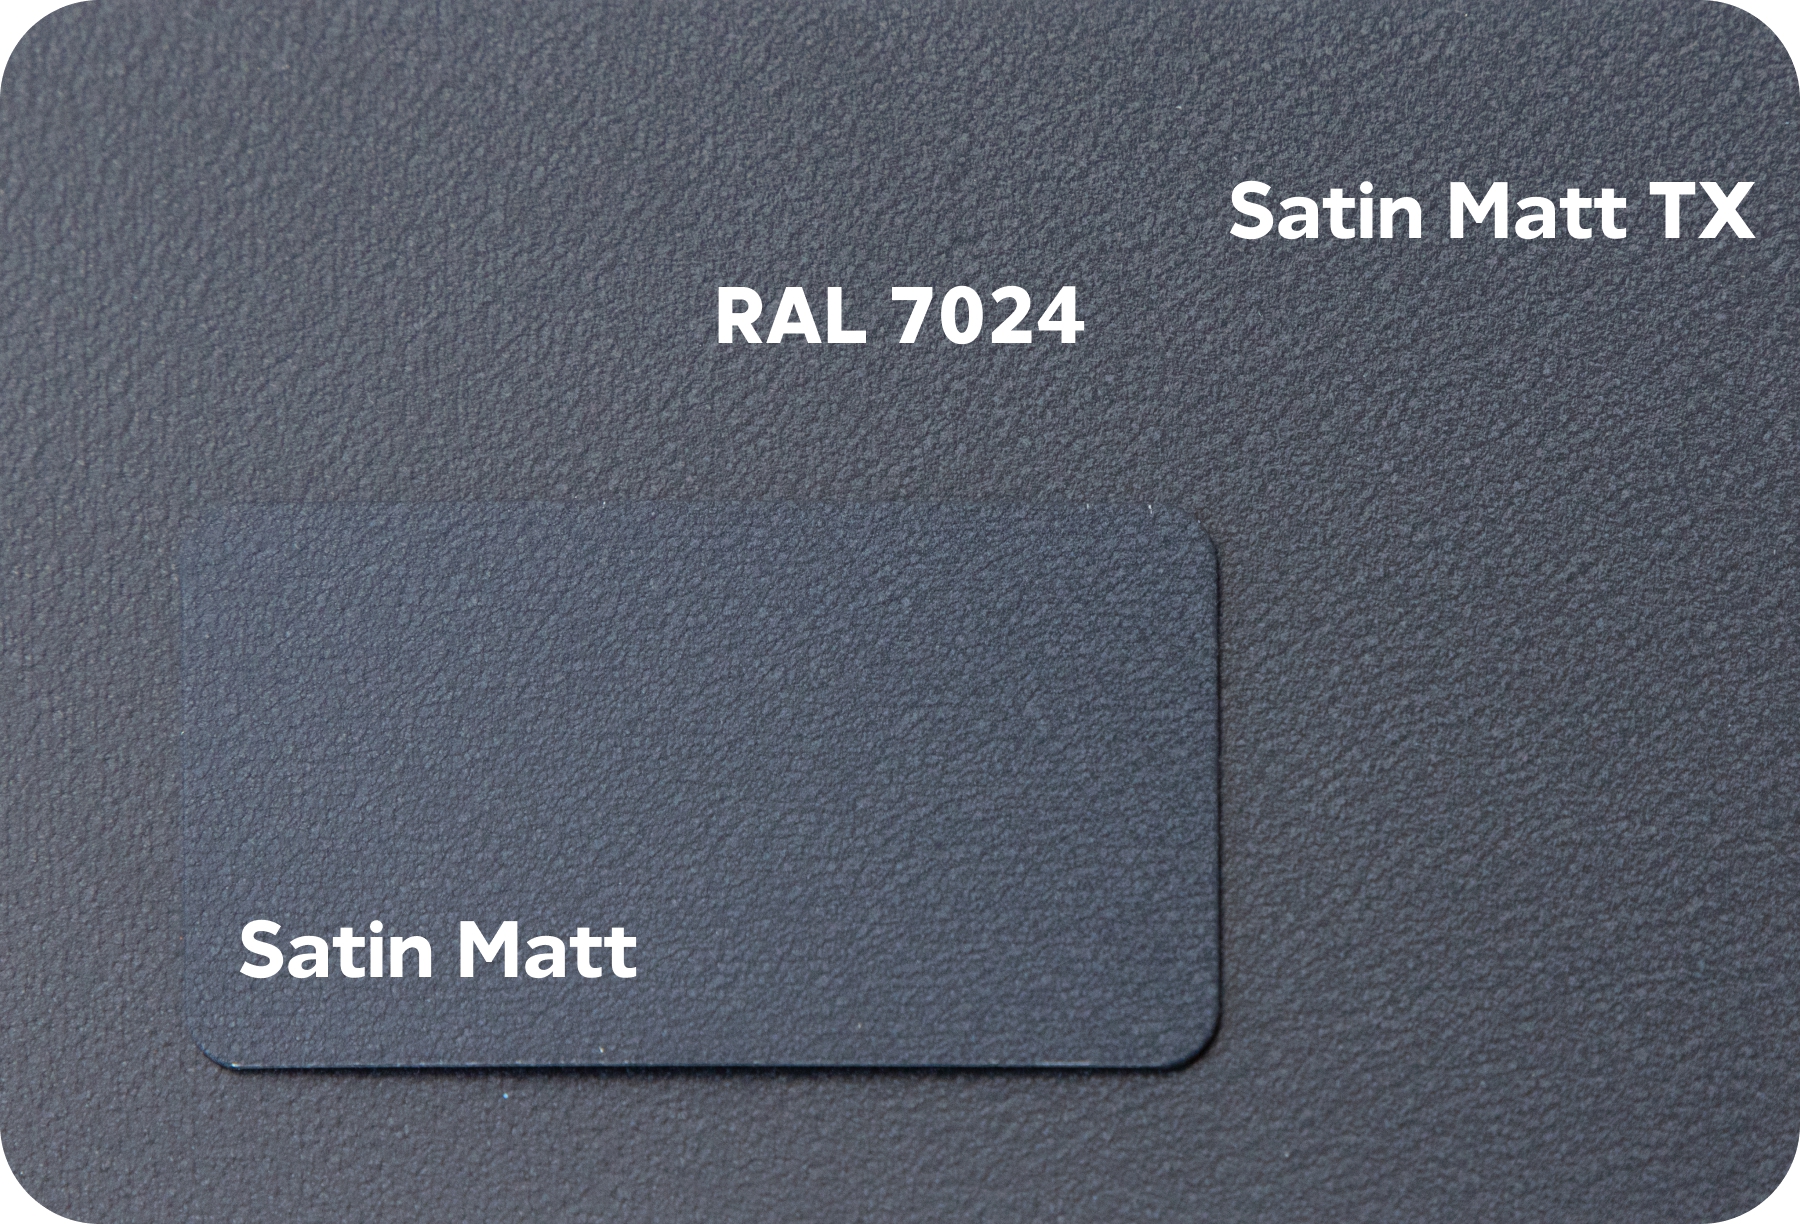 Ral 7024 matt. Цвет RAL 7024 Матт. Satin Matt 7024. Рал 7024 мокрый асфальт. Мокрый асфальт цвет RAL.